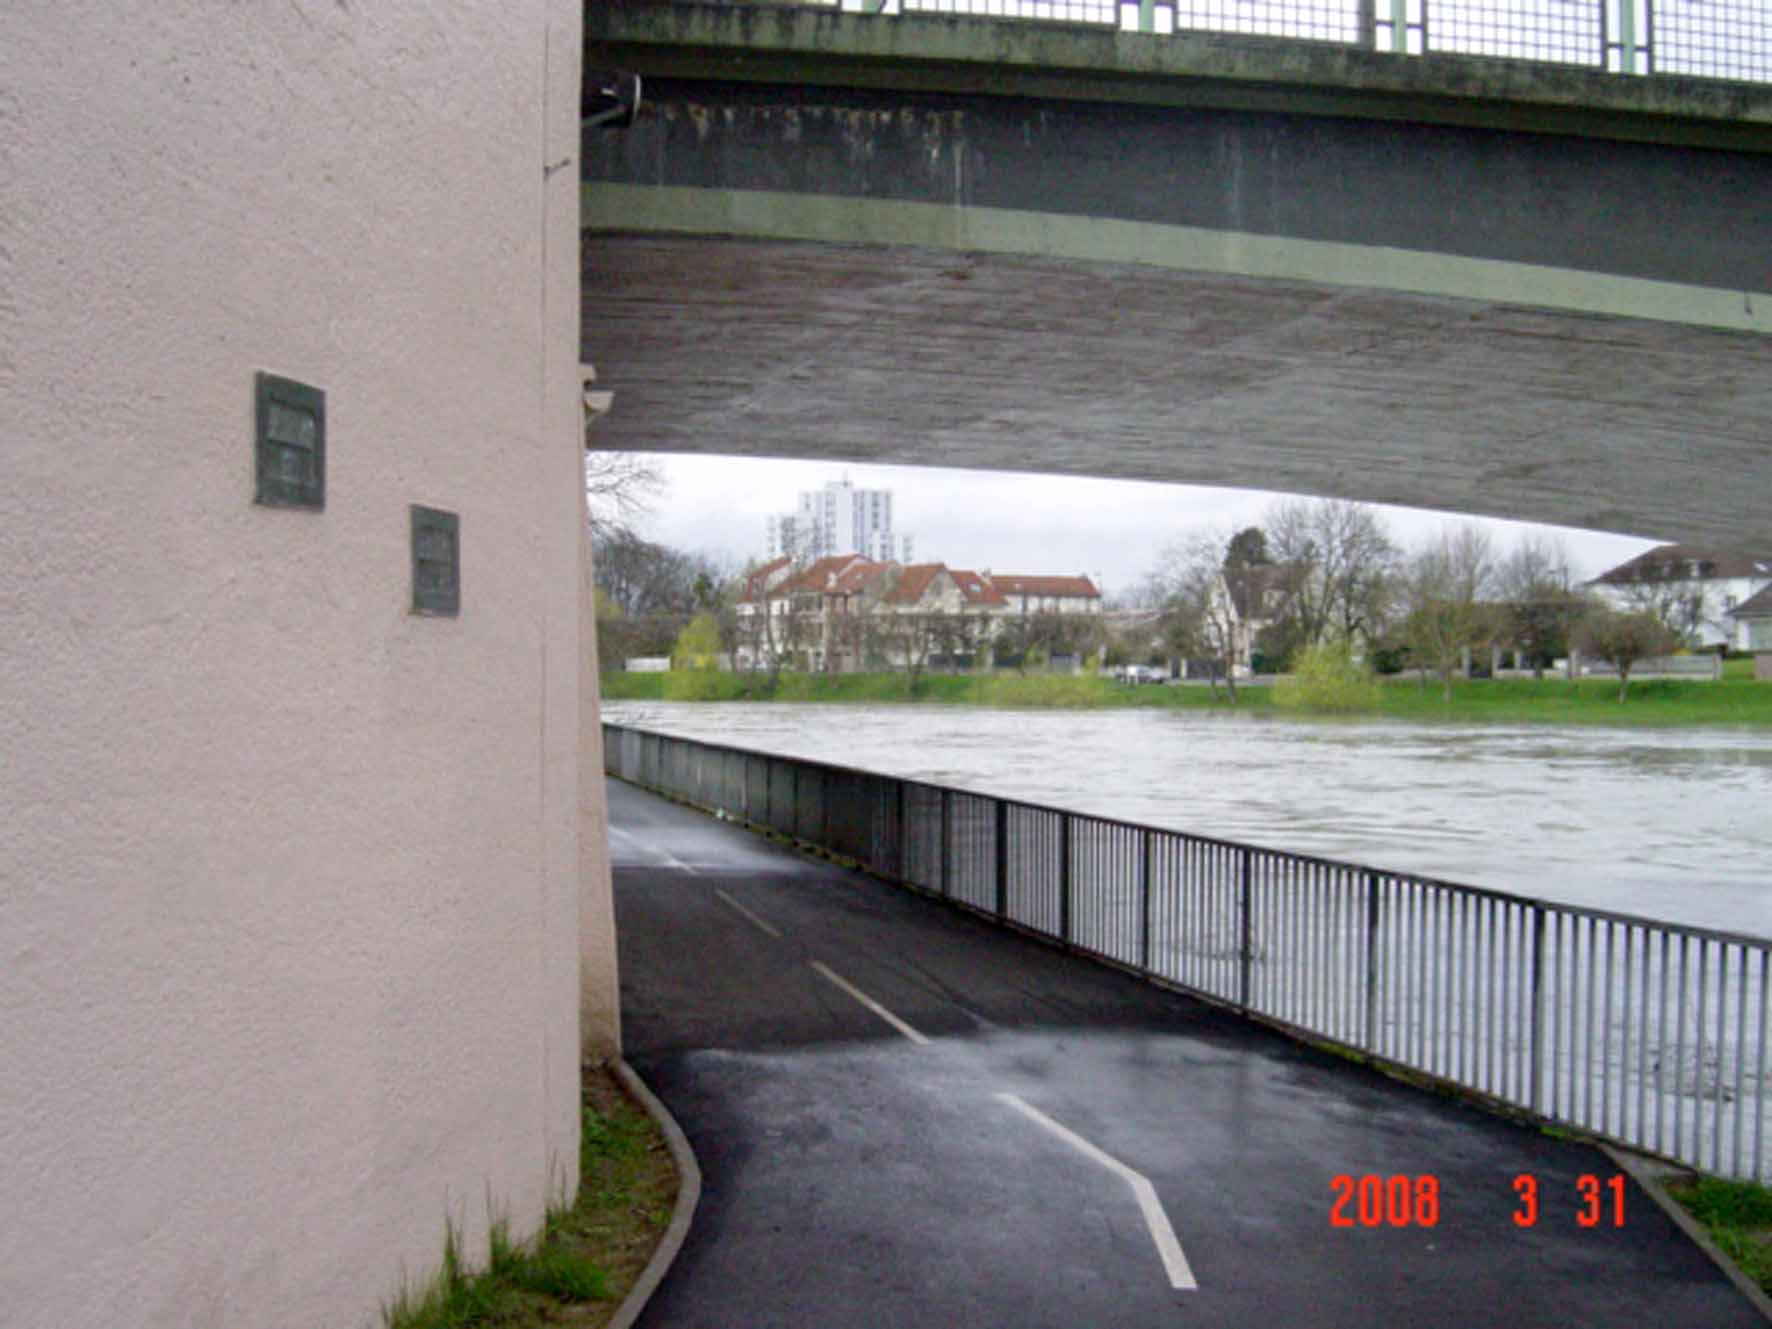 2008 pont de gournay 